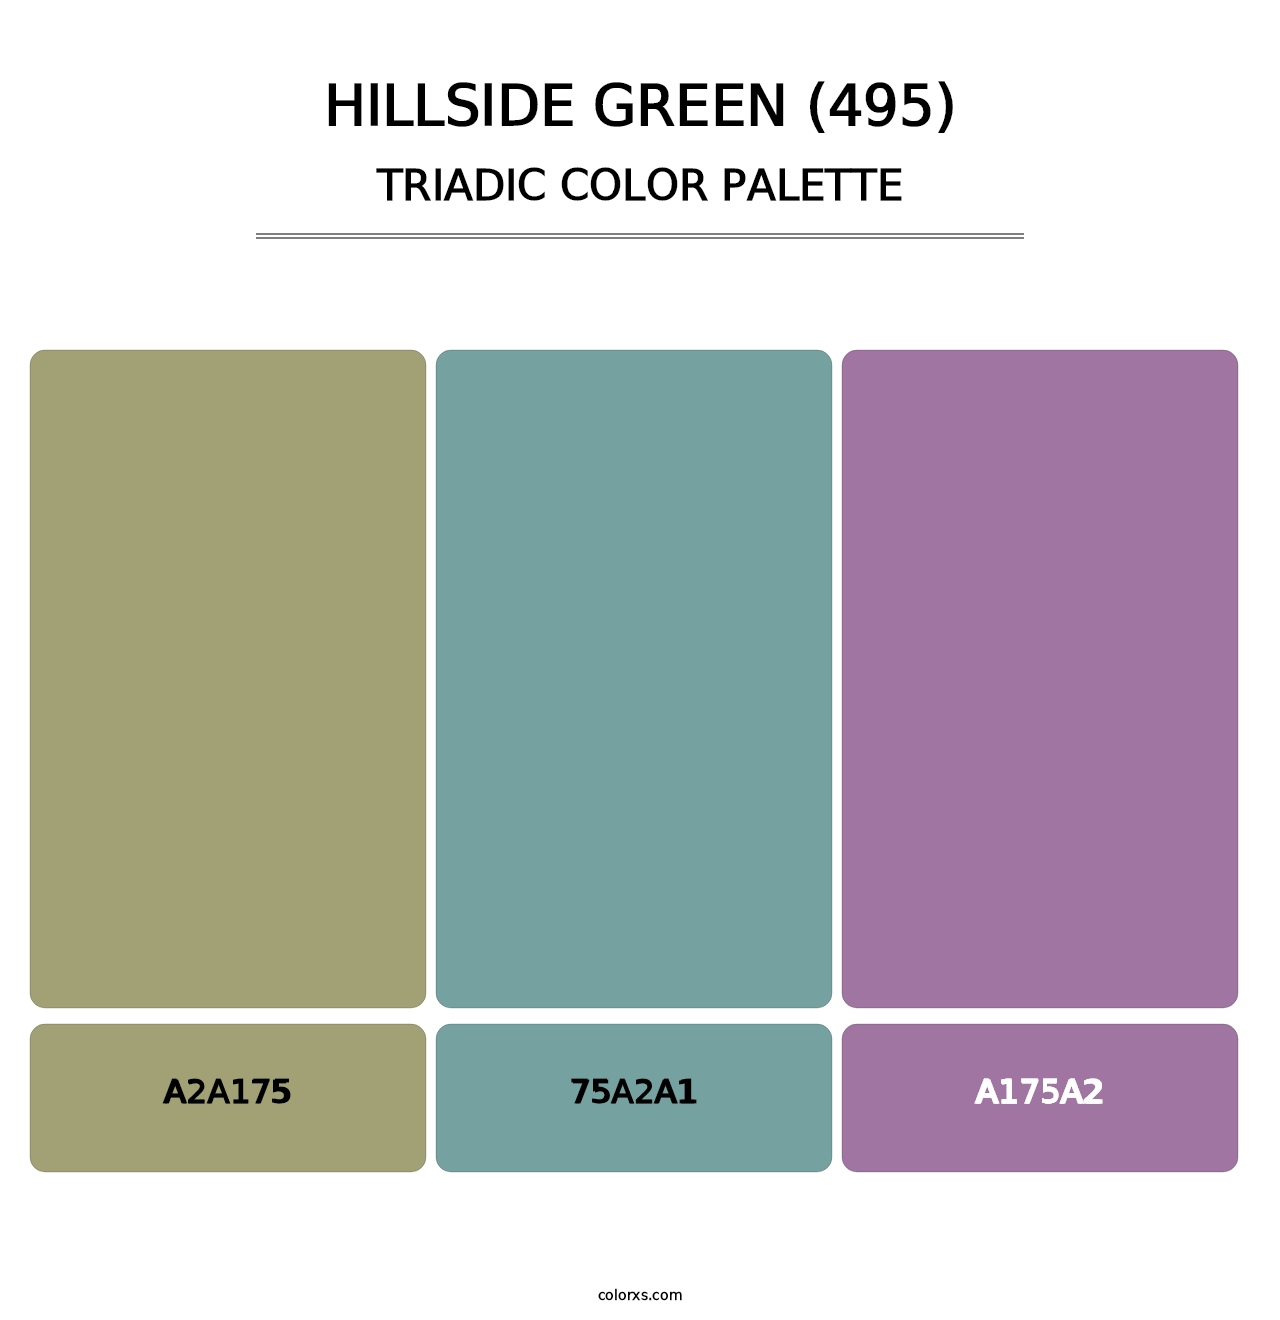 Hillside Green (495) - Triadic Color Palette